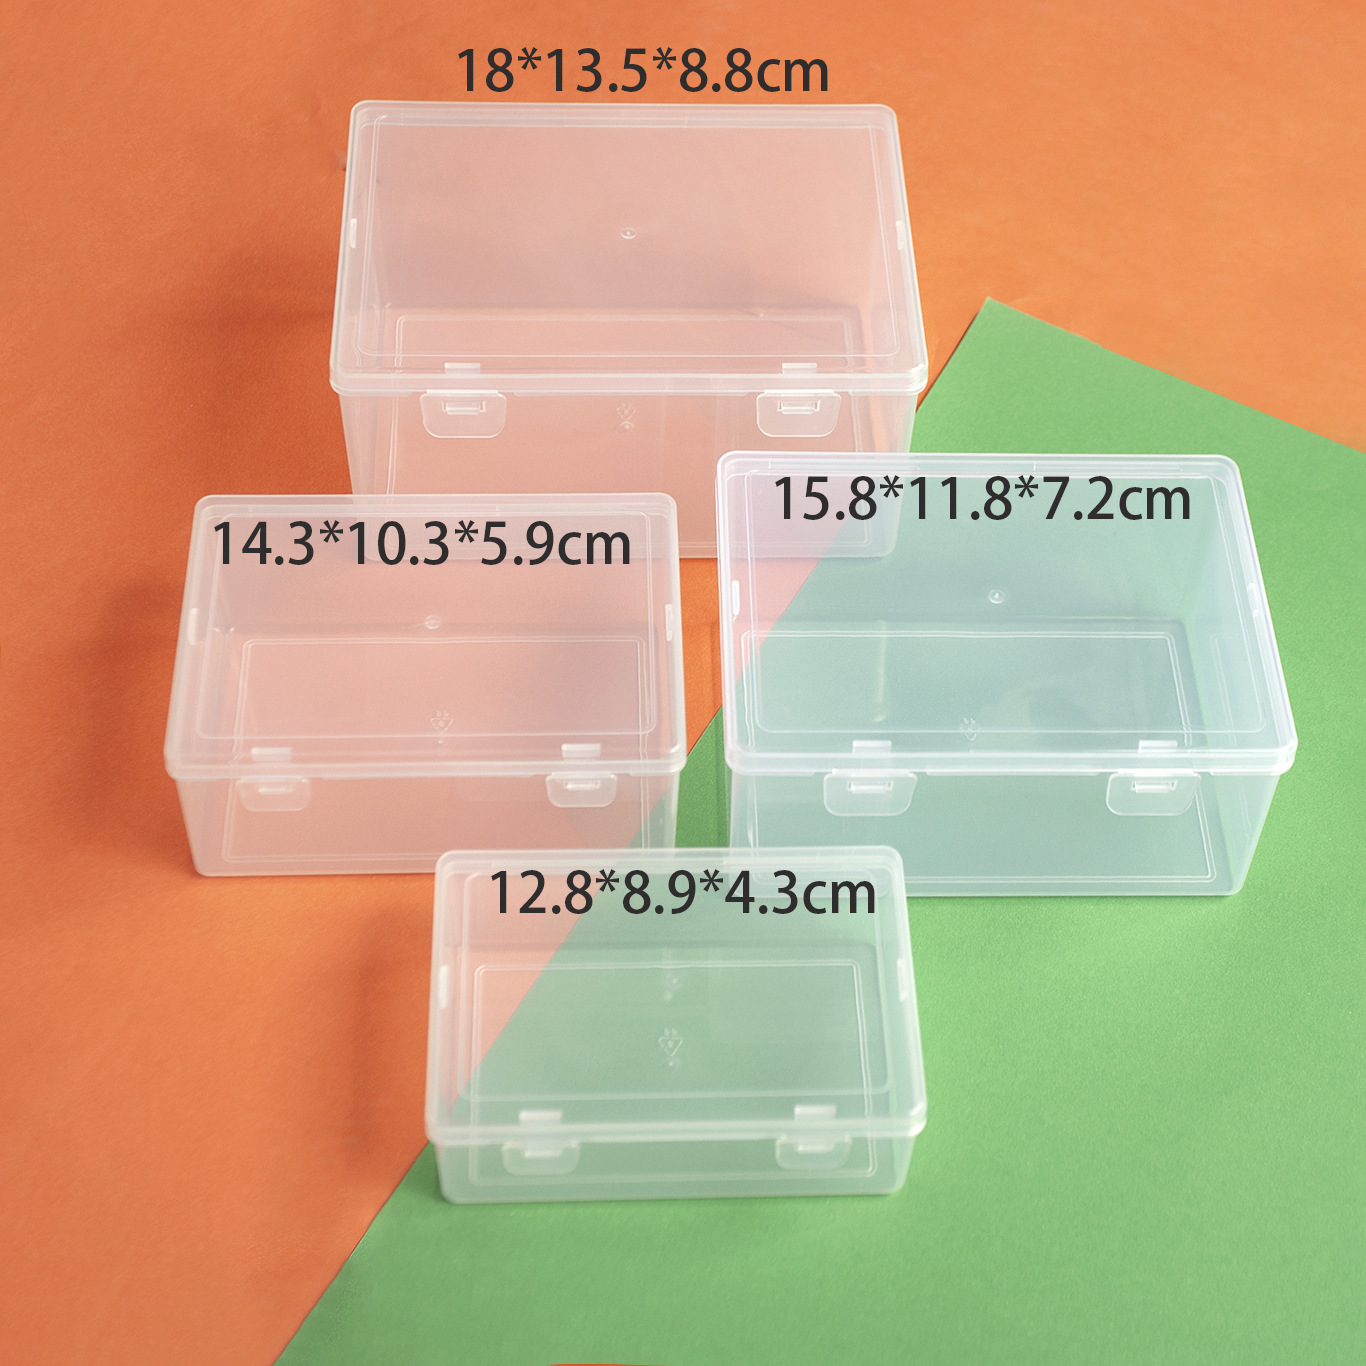 长方形渔具透明塑料包装盒饰品配件元件工具收纳空盒翻盖储物盒子